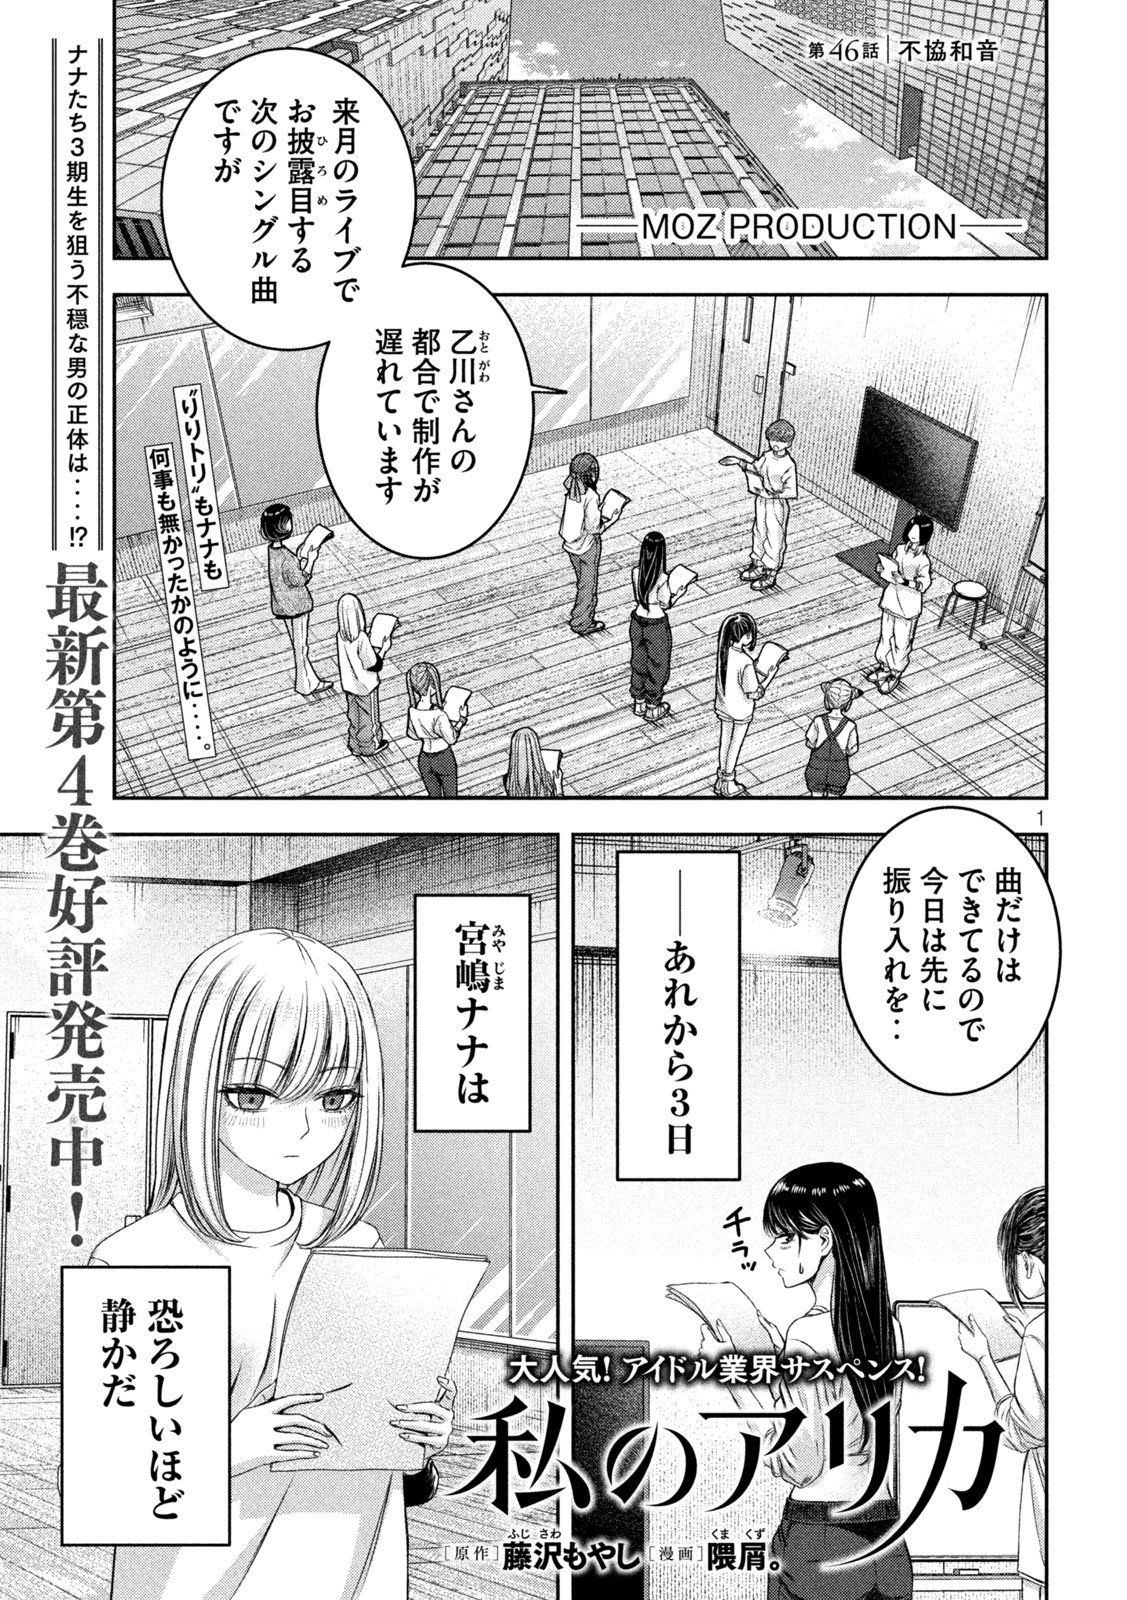 Watashi no Arika - Chapter 46 - Page 1